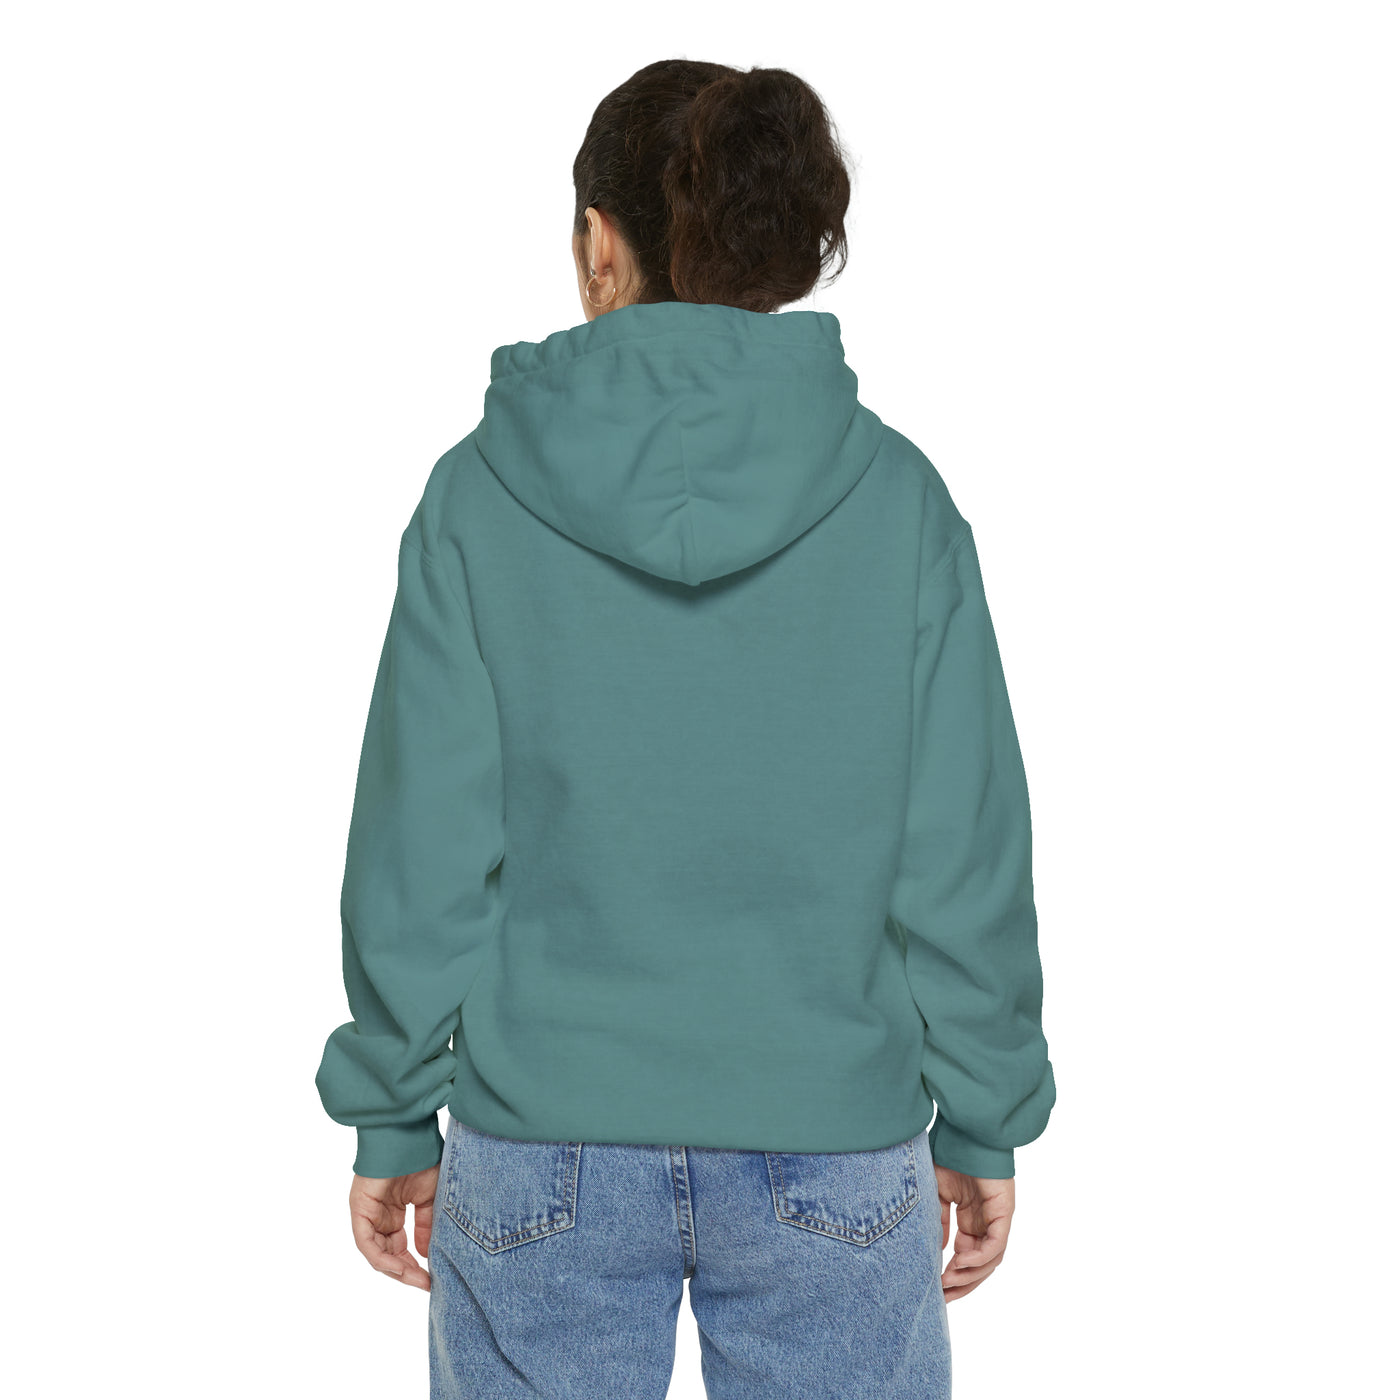 Unisex Garment-Dyed Hoodie - Multicolored Hoodie